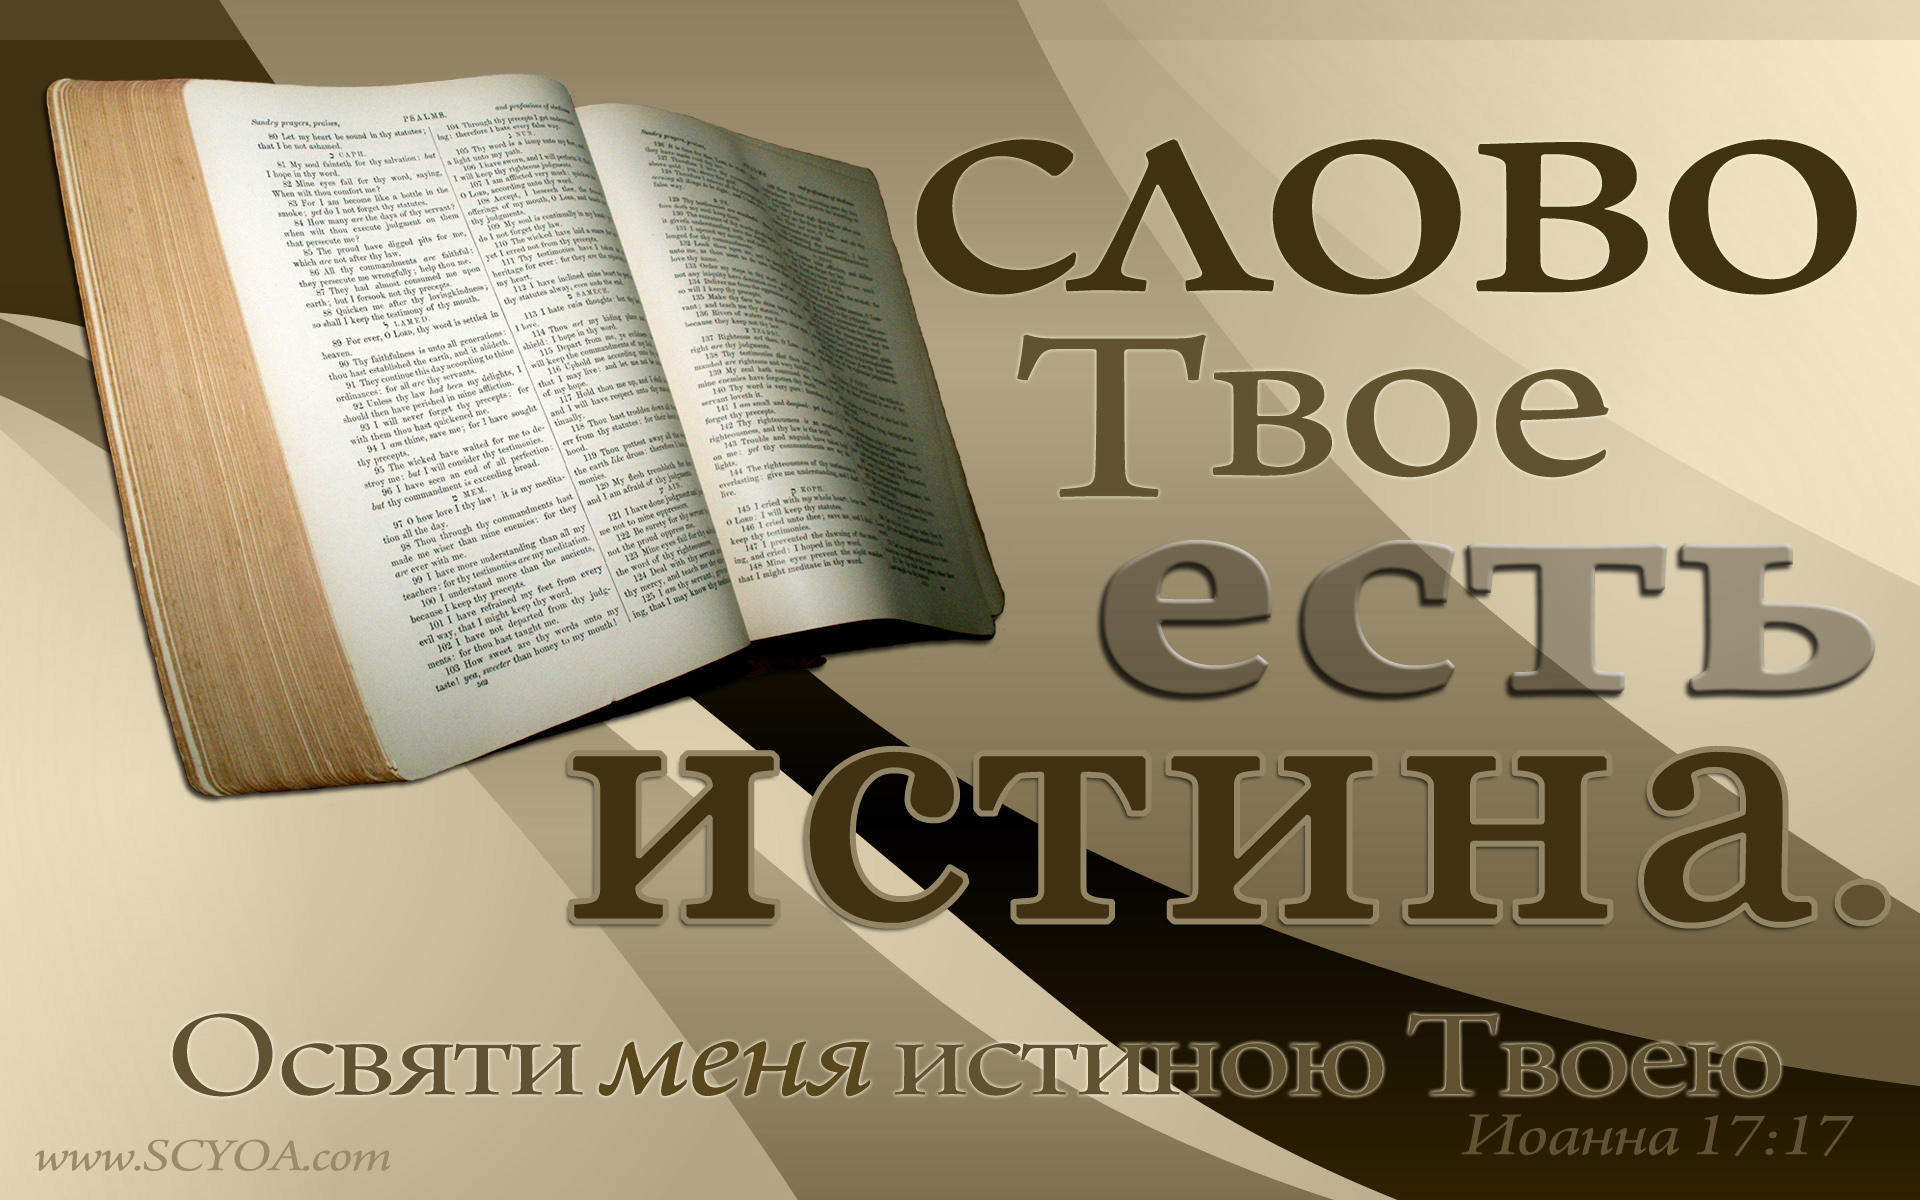 Слово божье книга. Слово Божье есть истина. Слово твое есть истина Библия. Библия слово Божье. Библия слово Бога.